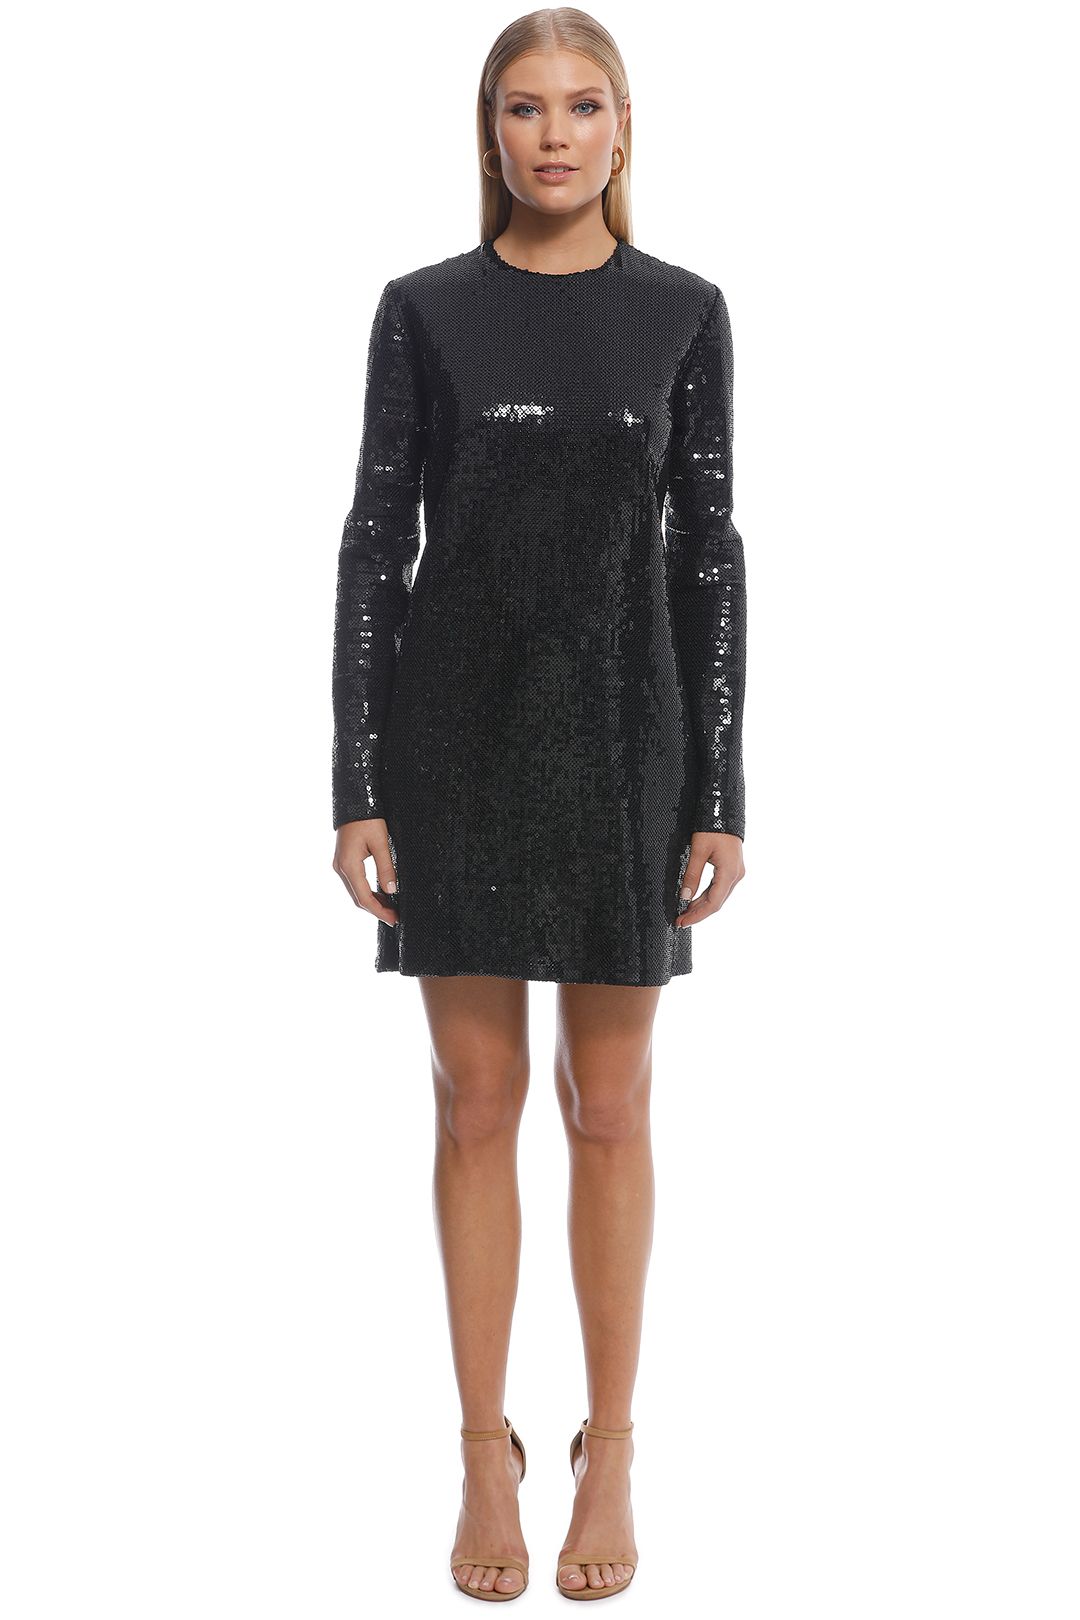 Ellery - Sequin LS Mini Dress - Black - Front